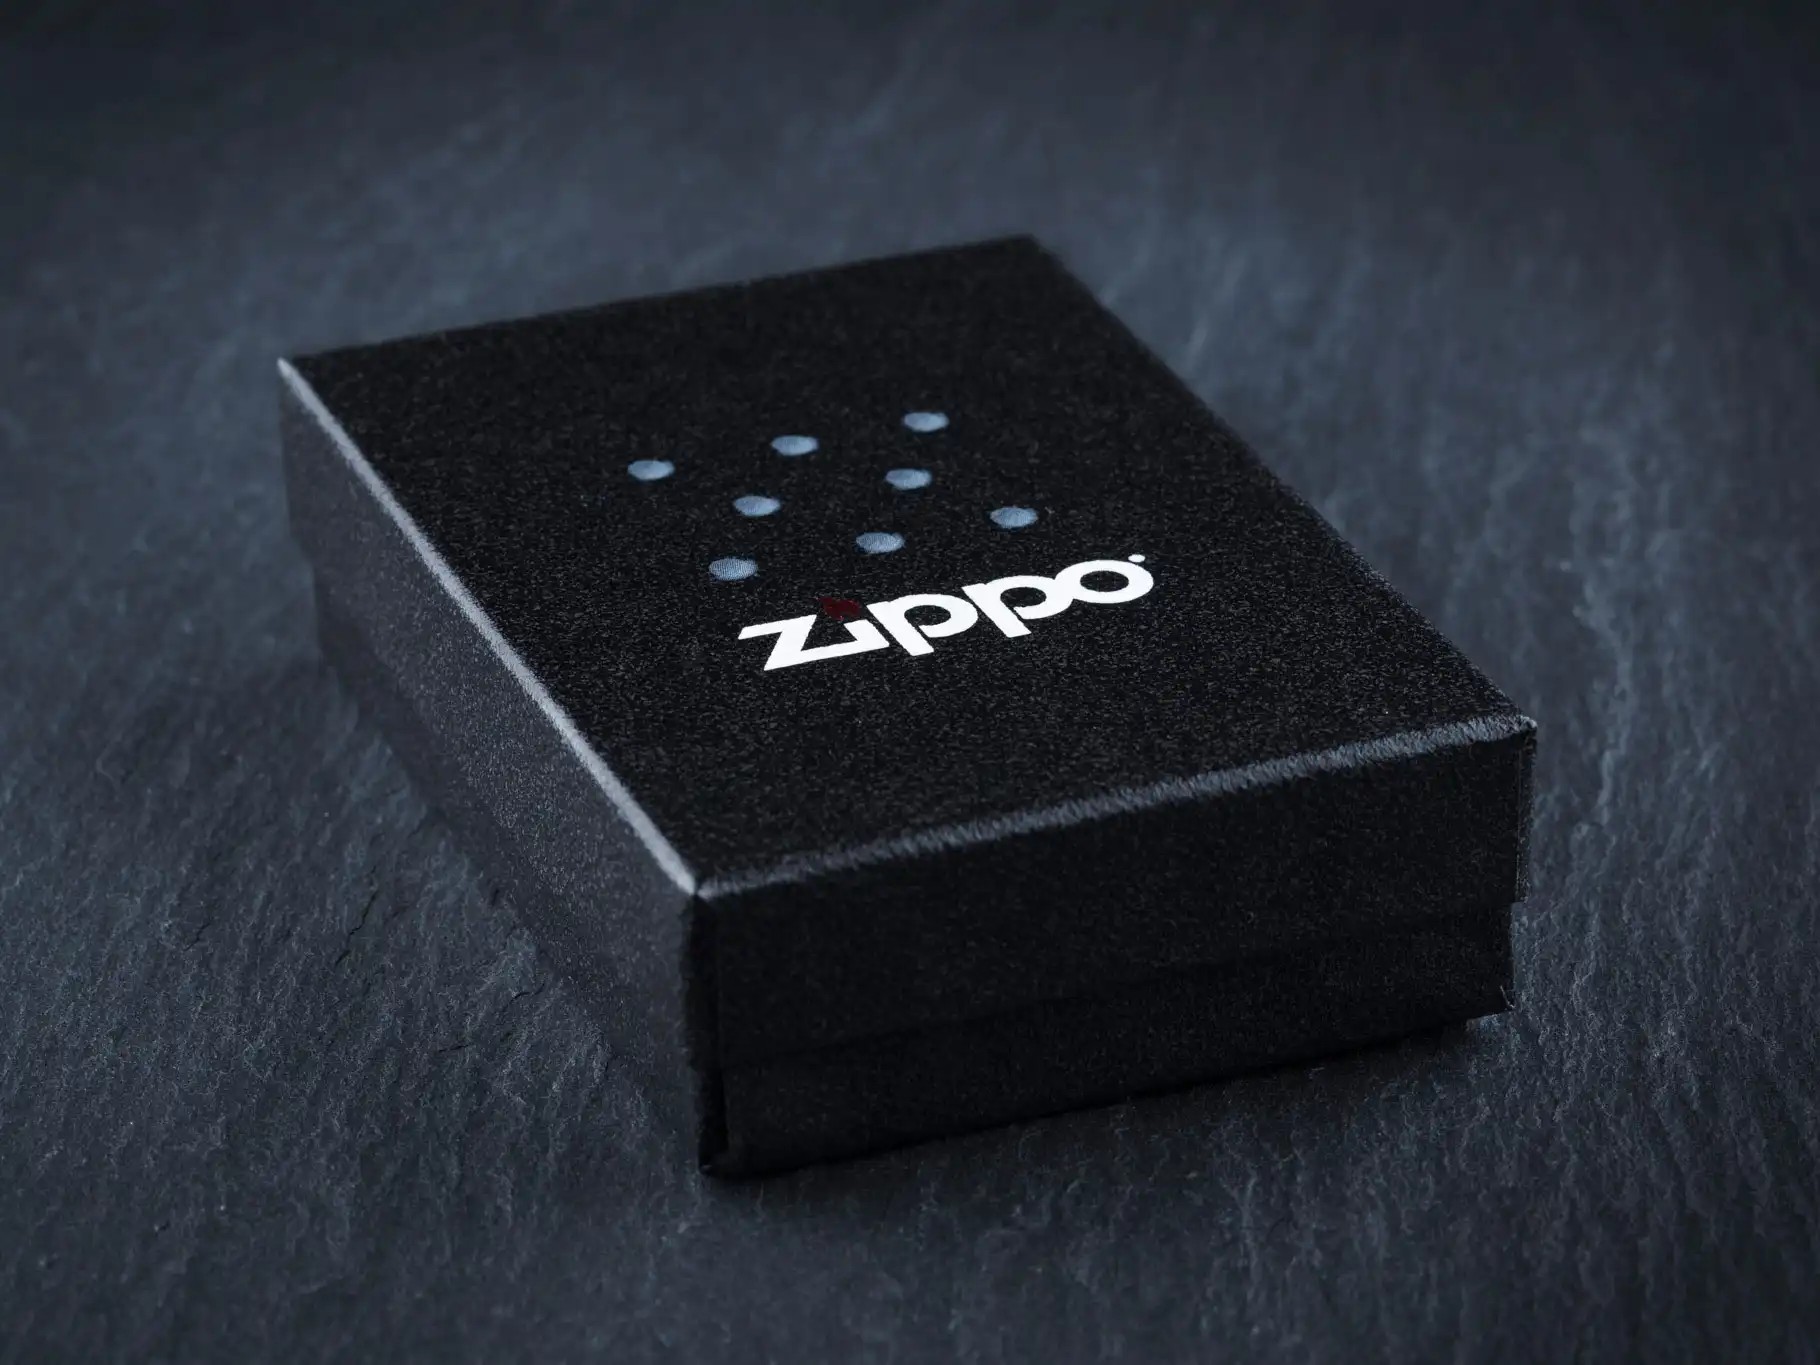 Logo Zippo lighter